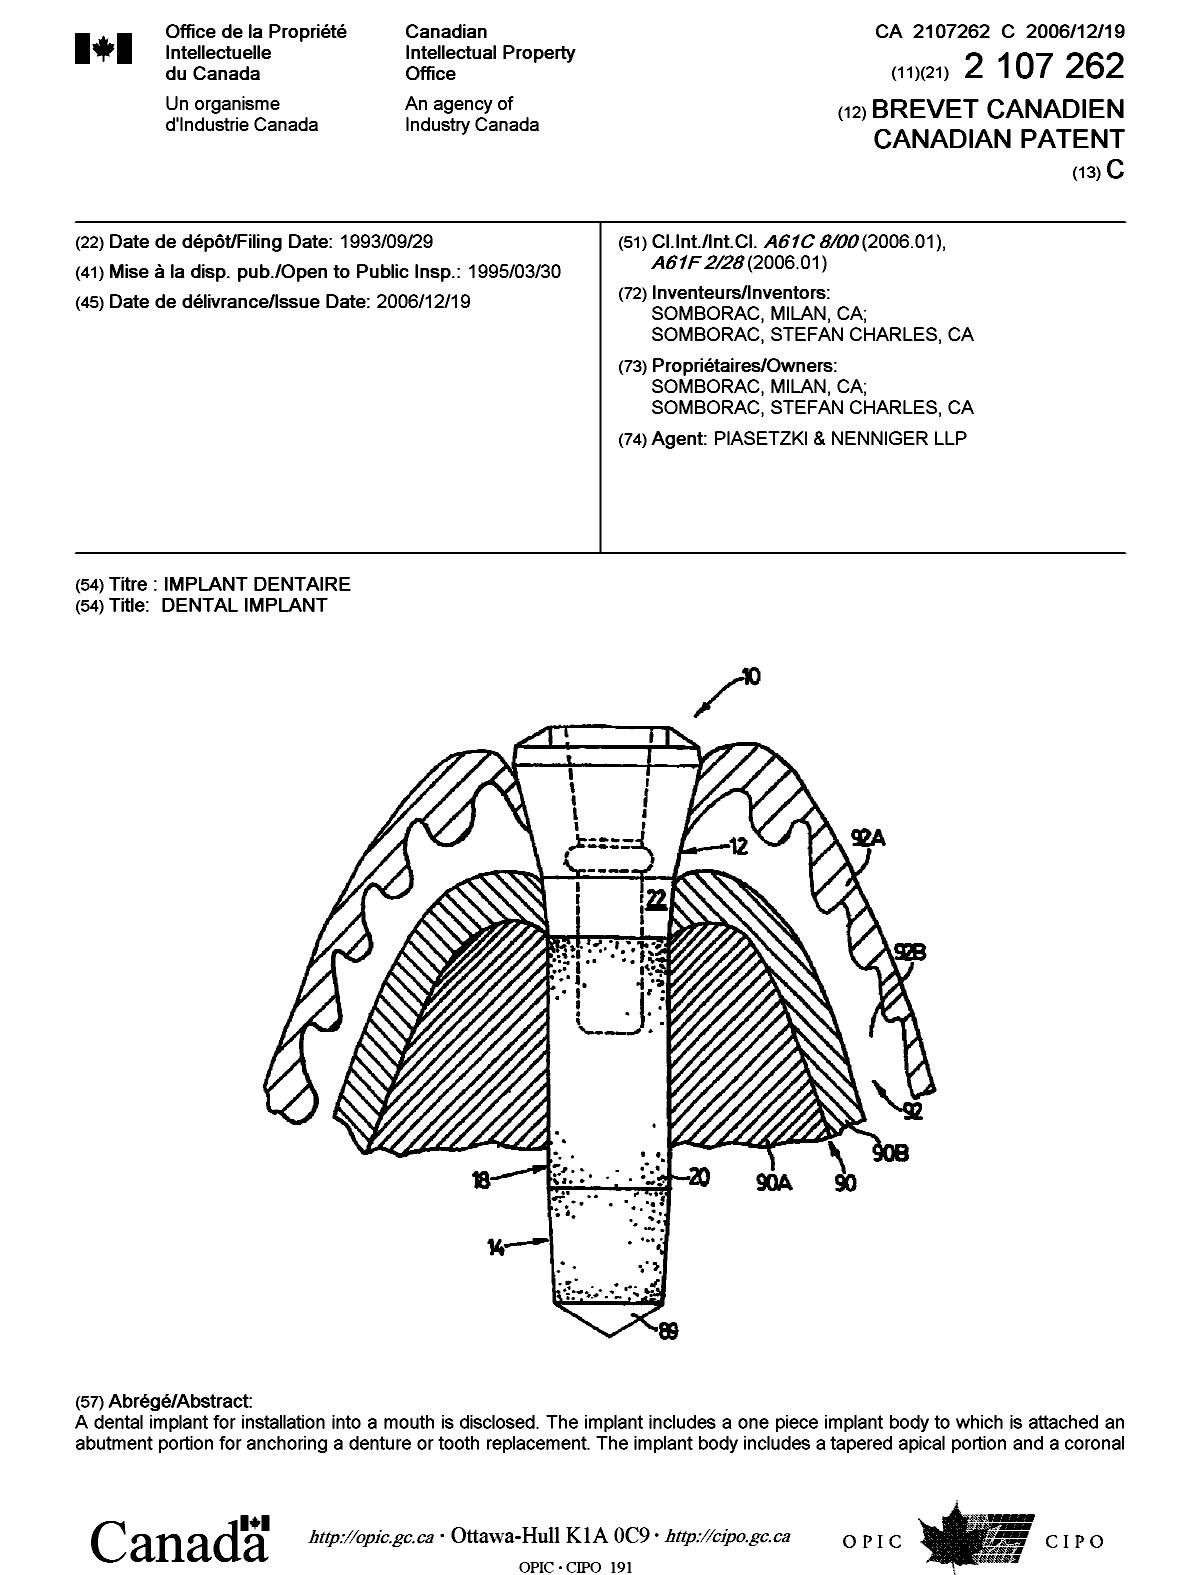 Document de brevet canadien 2107262. Page couverture 20061116. Image 1 de 2